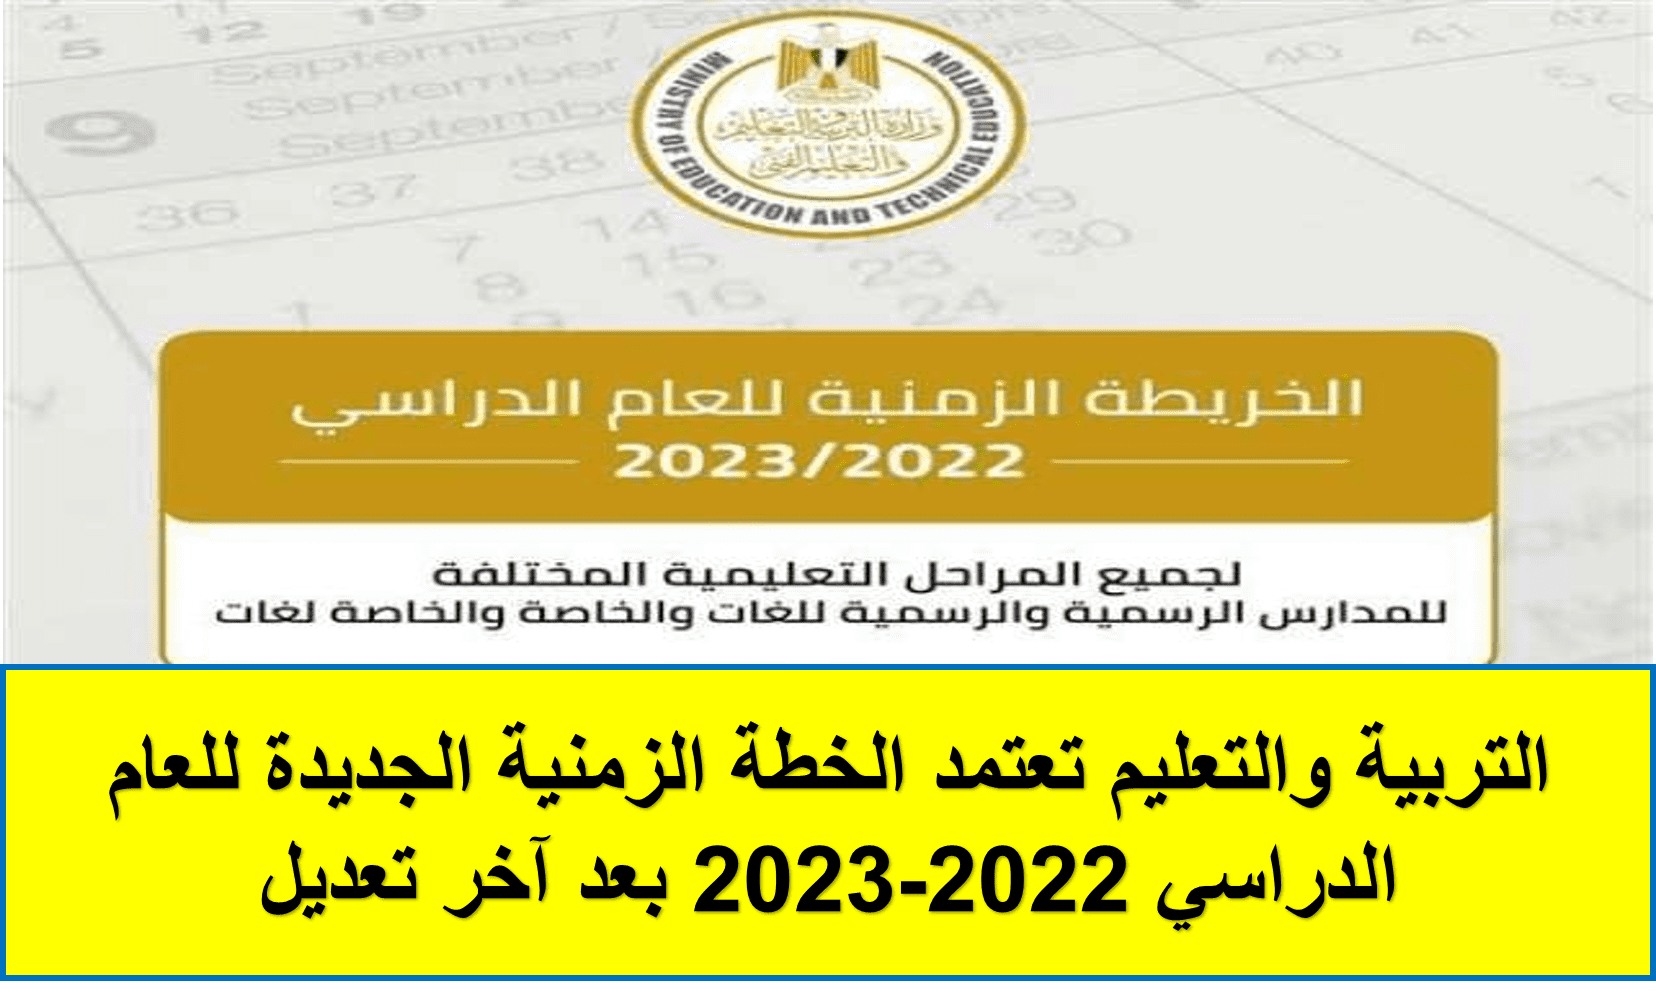 الخطة الزمنية الجديدة للعام الدراسي 2022-2023 بعد آخر تعديل